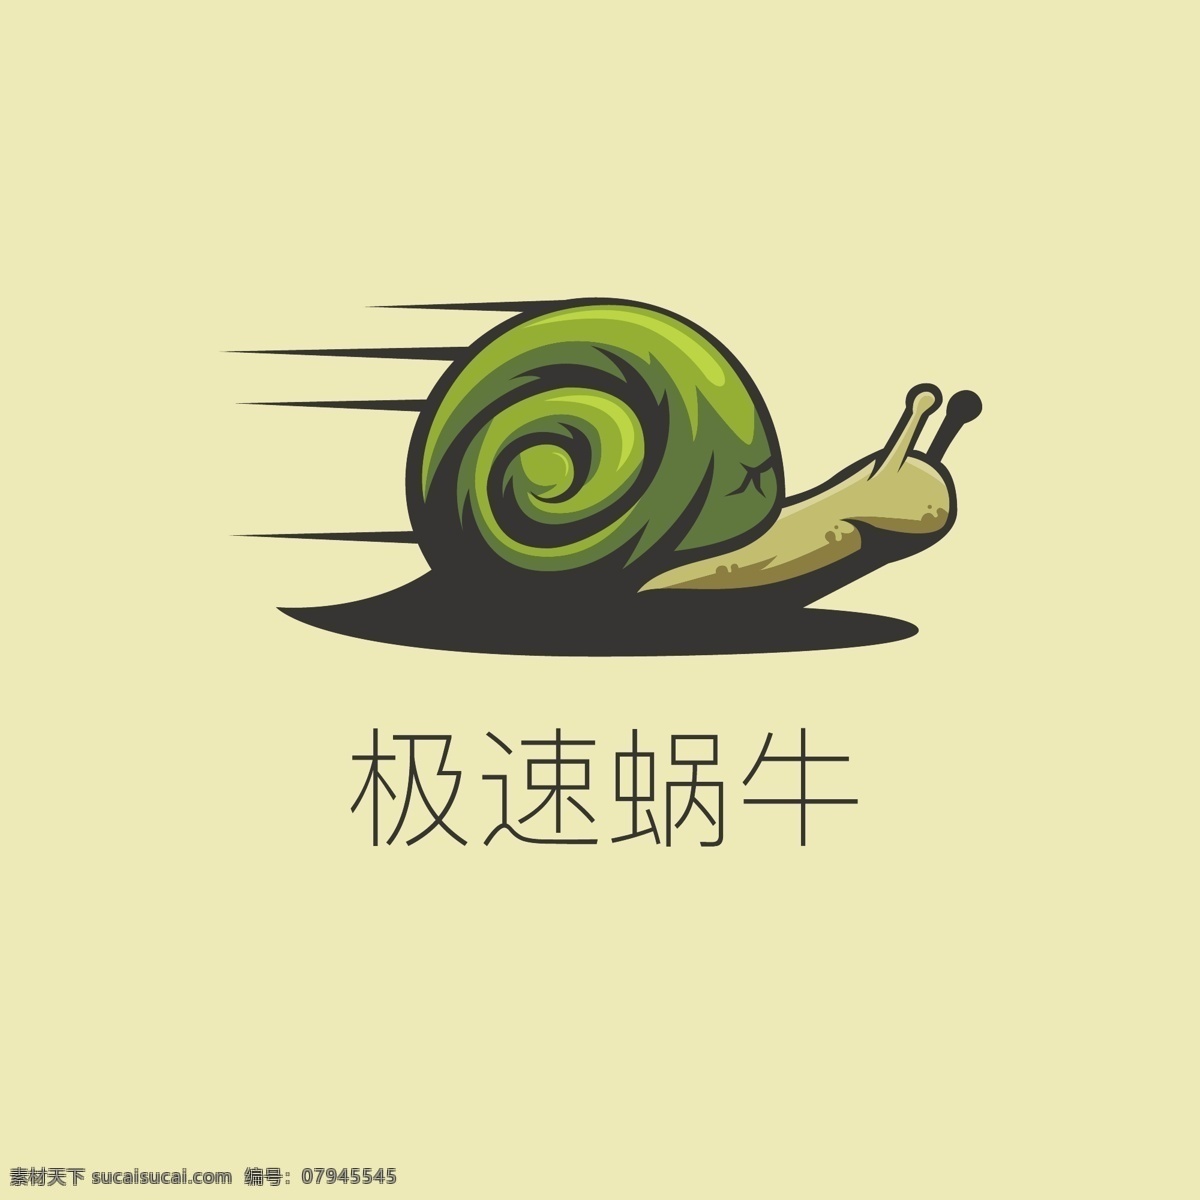 卡通蜗牛 蜗牛 巨型蜗牛 蠕形动物 蜗牛造型 爬行蜗牛 蜗牛素材 矢量卡通 logo设计